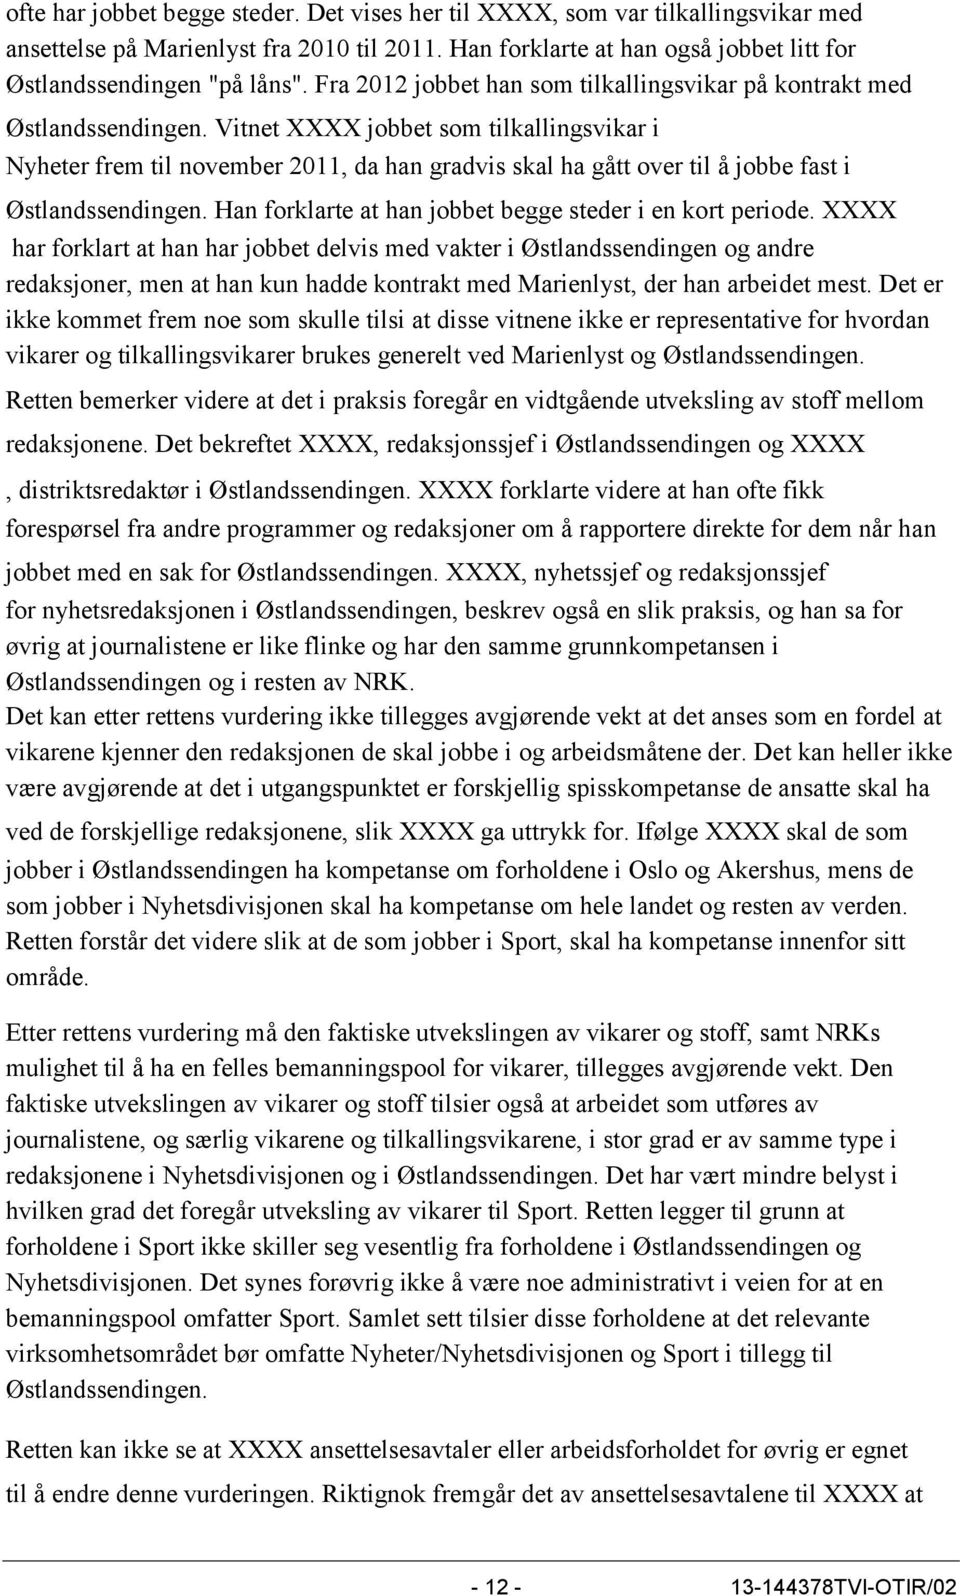 Vitnet XXXX jobbet som tilkallingsvikar i Nyheter frem til november 2011, da han gradvis skal ha gått over til å jobbe fast i Østlandssendingen.